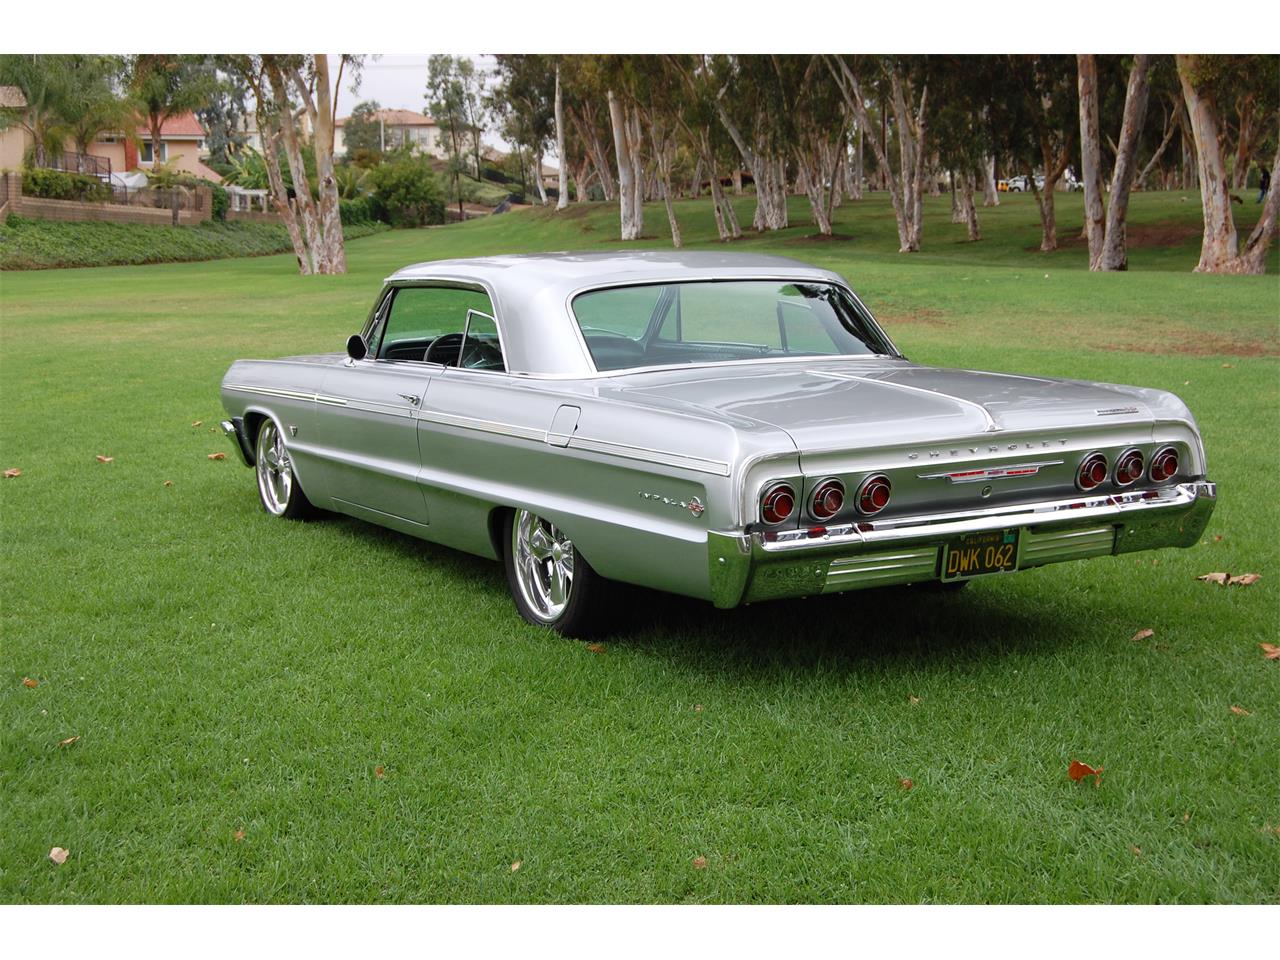 1964 Chevrolet Impala SS for Sale | ClassicCars.com | CC-1044556